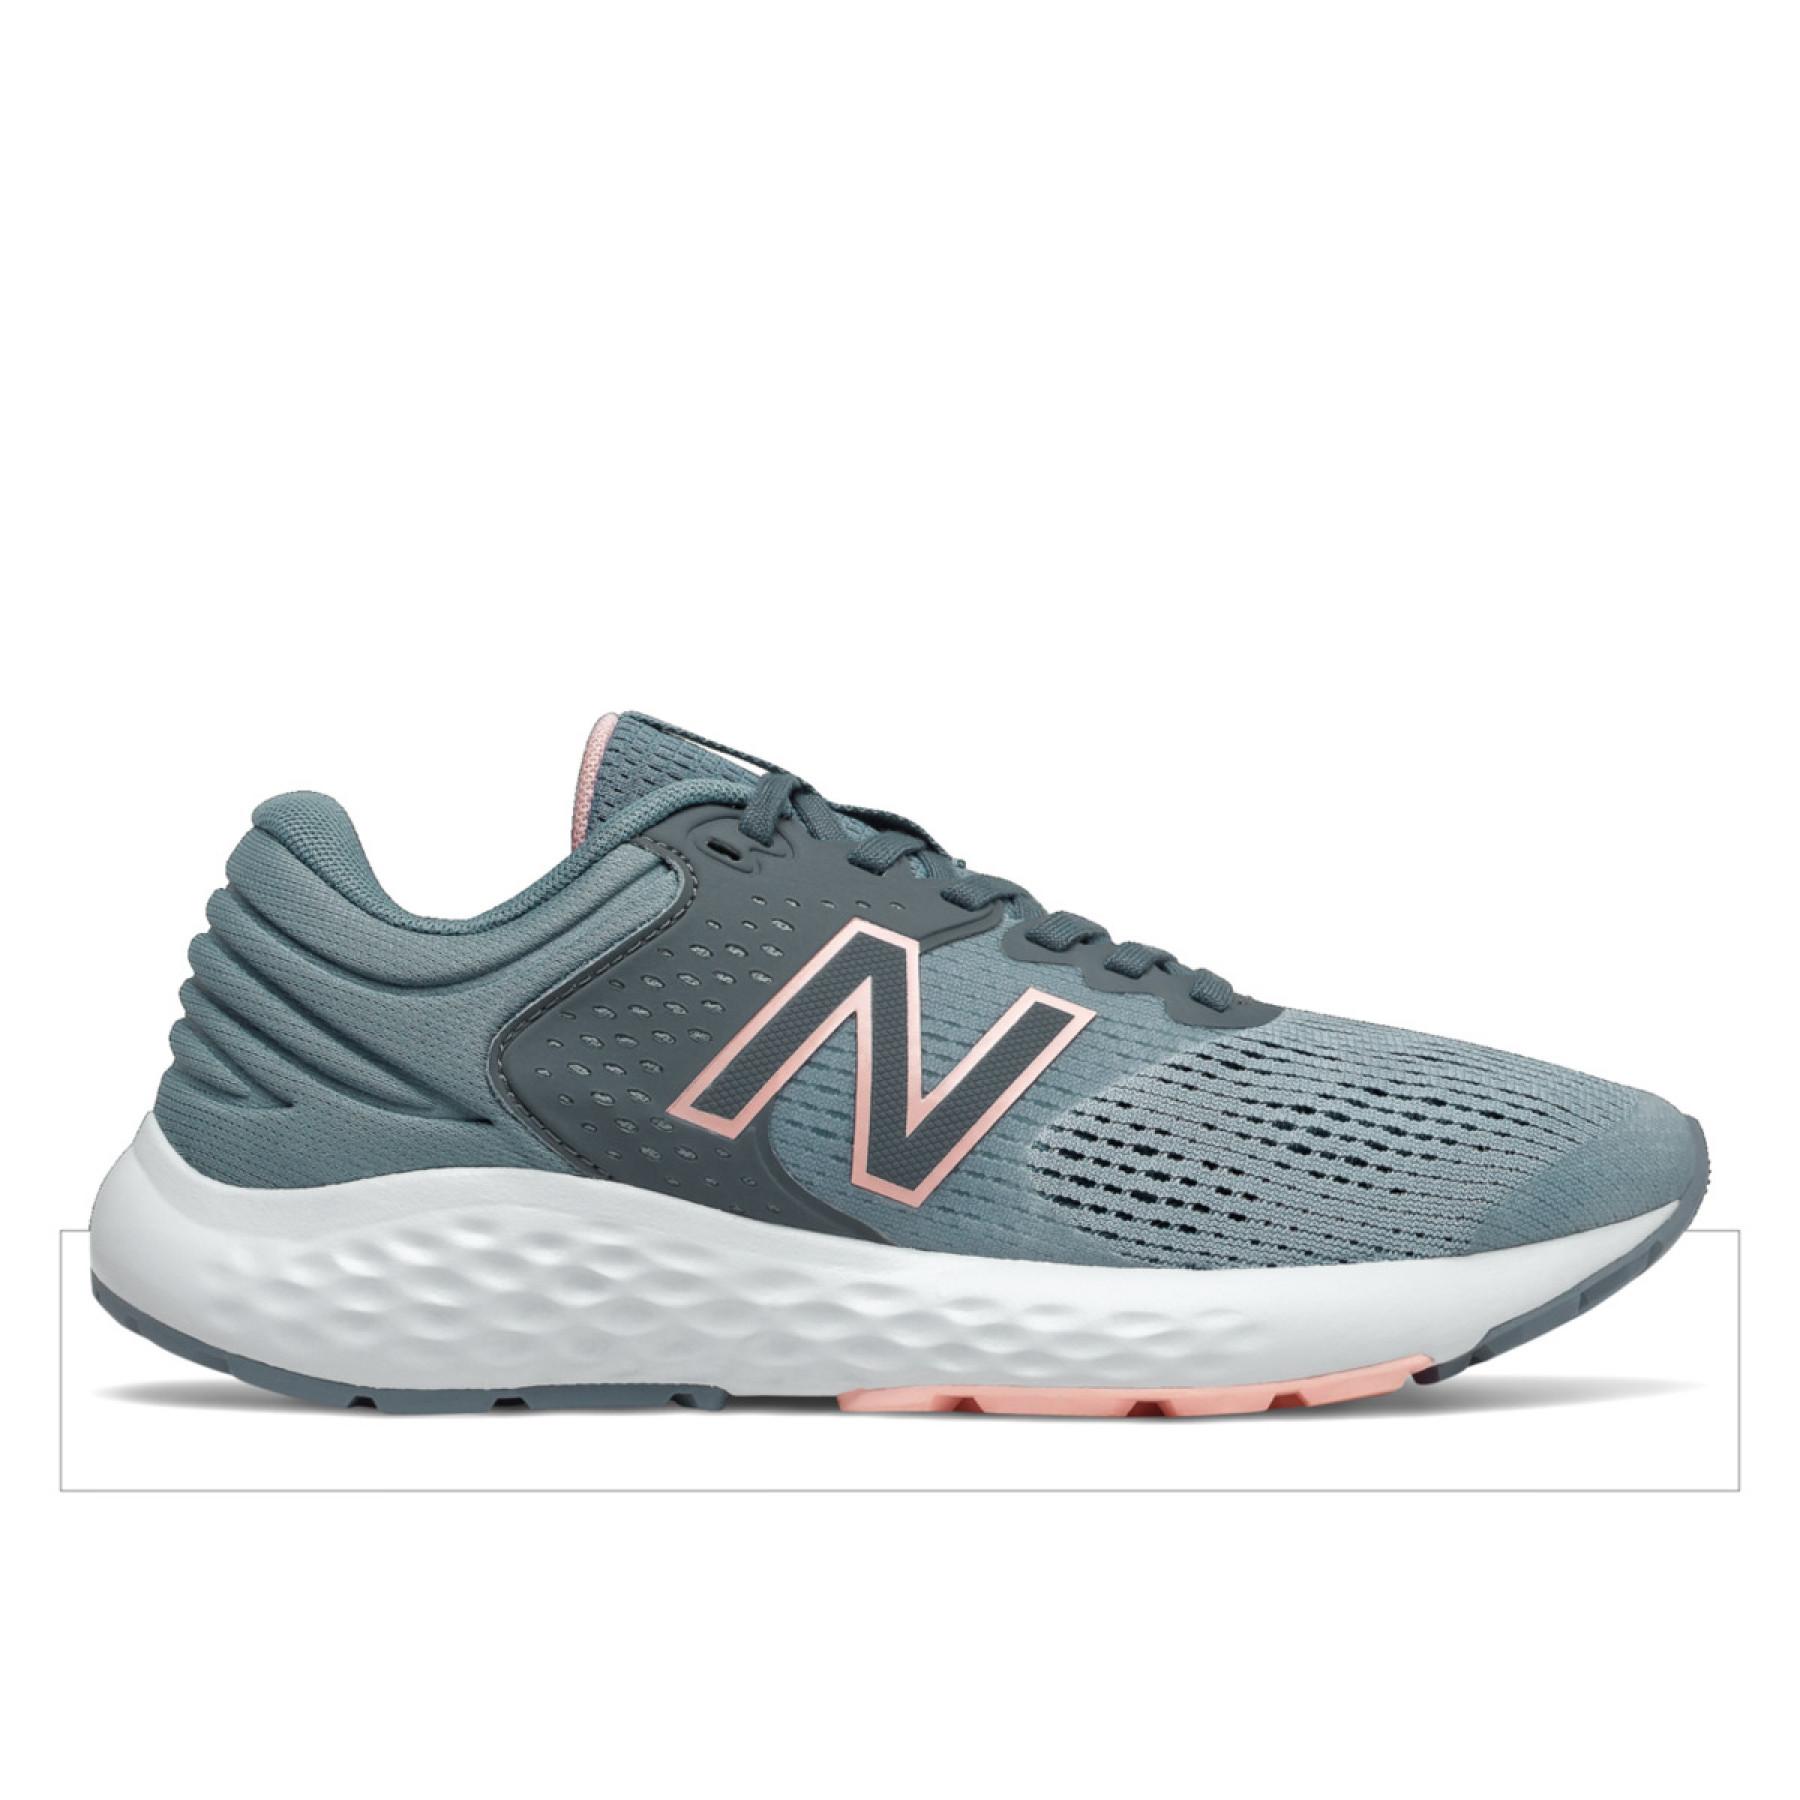 Chaussures de running femme New Balance 520v7